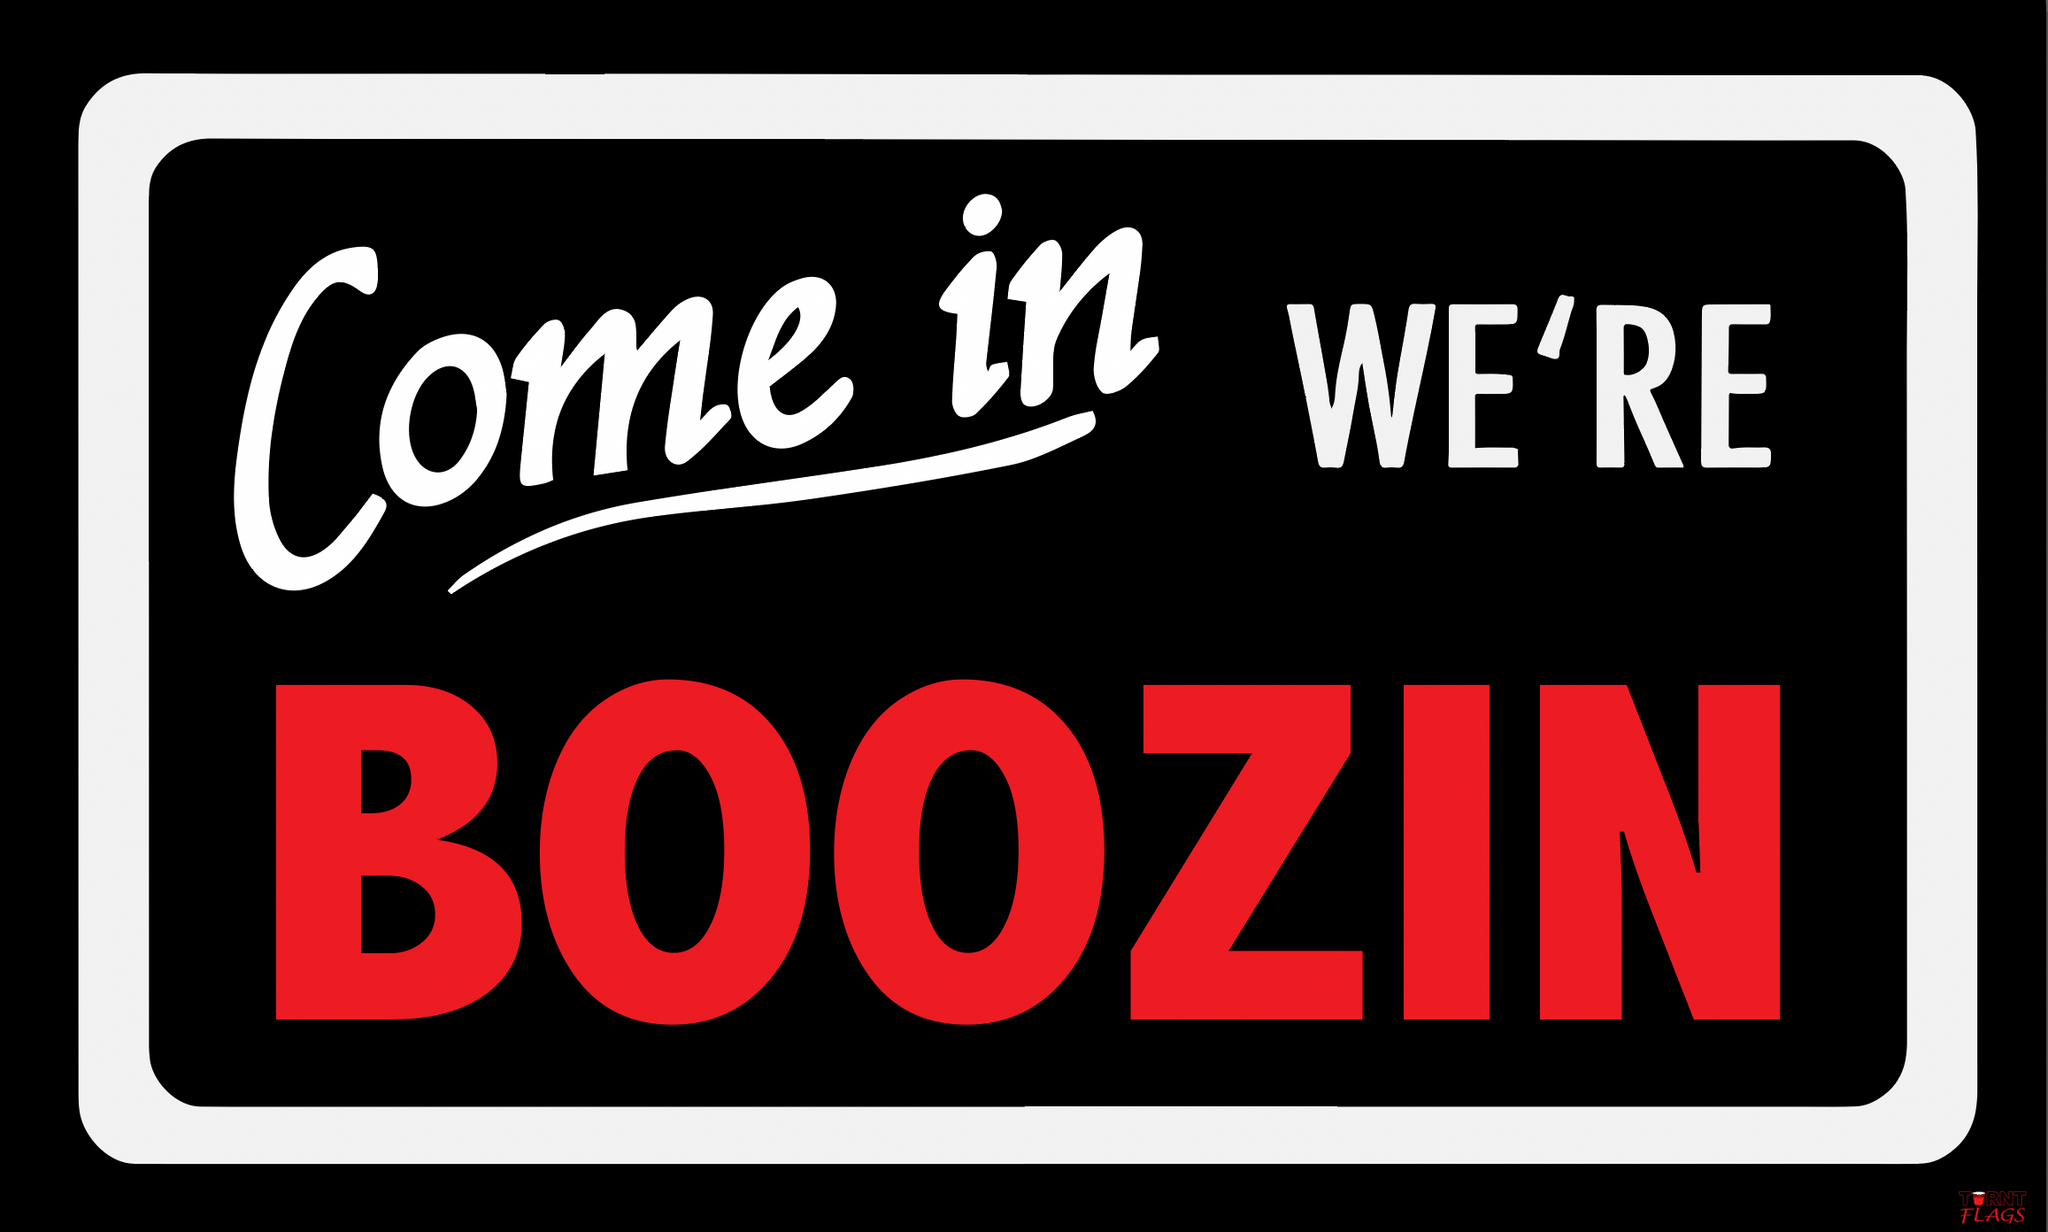 Come in we're Boozin